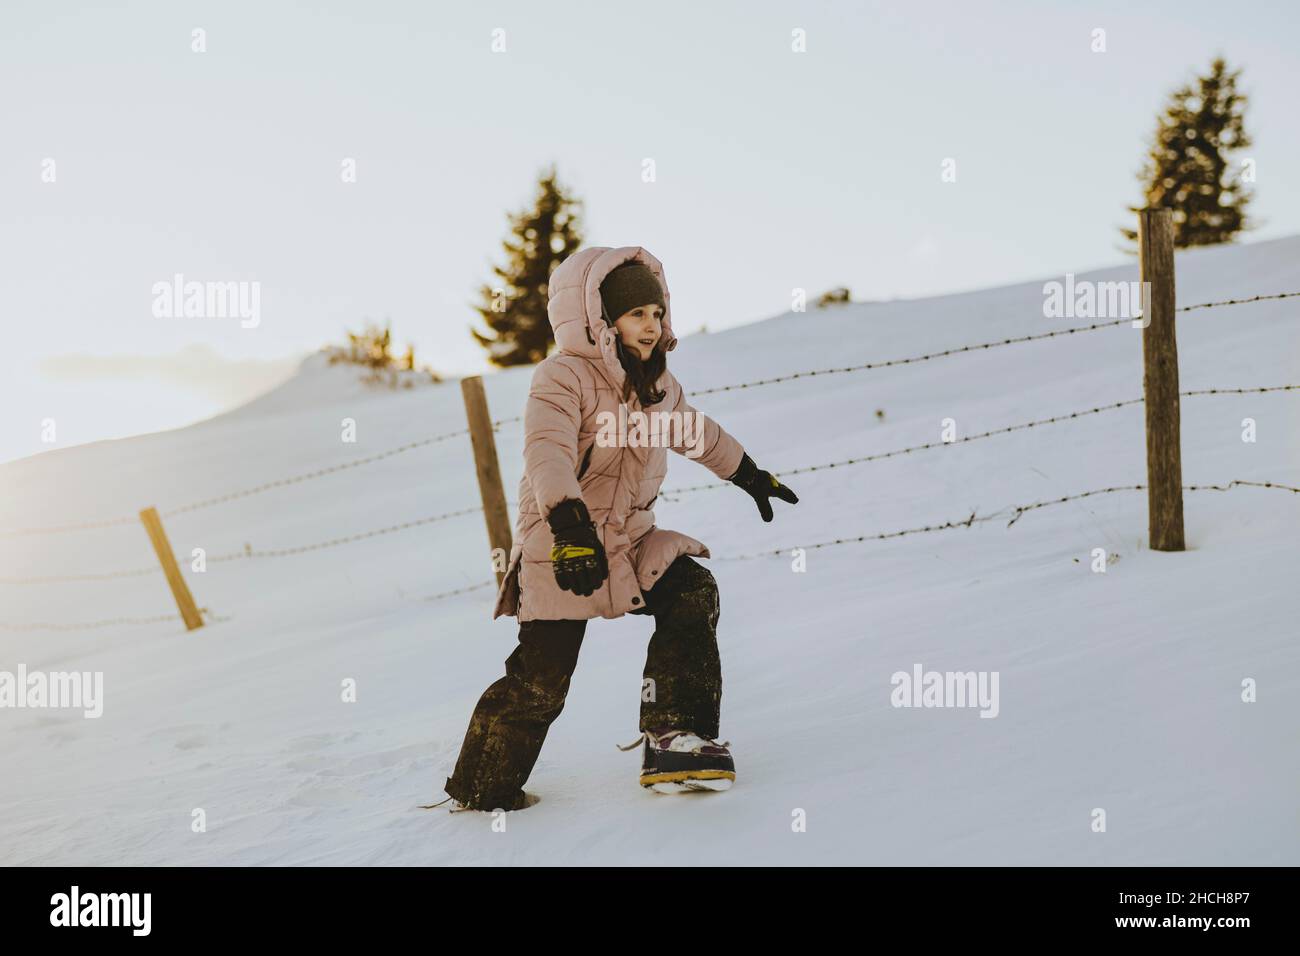 Une fille qui se couche dans la neige, Plakogel, Sommeralm, Styrie, Autriche Banque D'Images